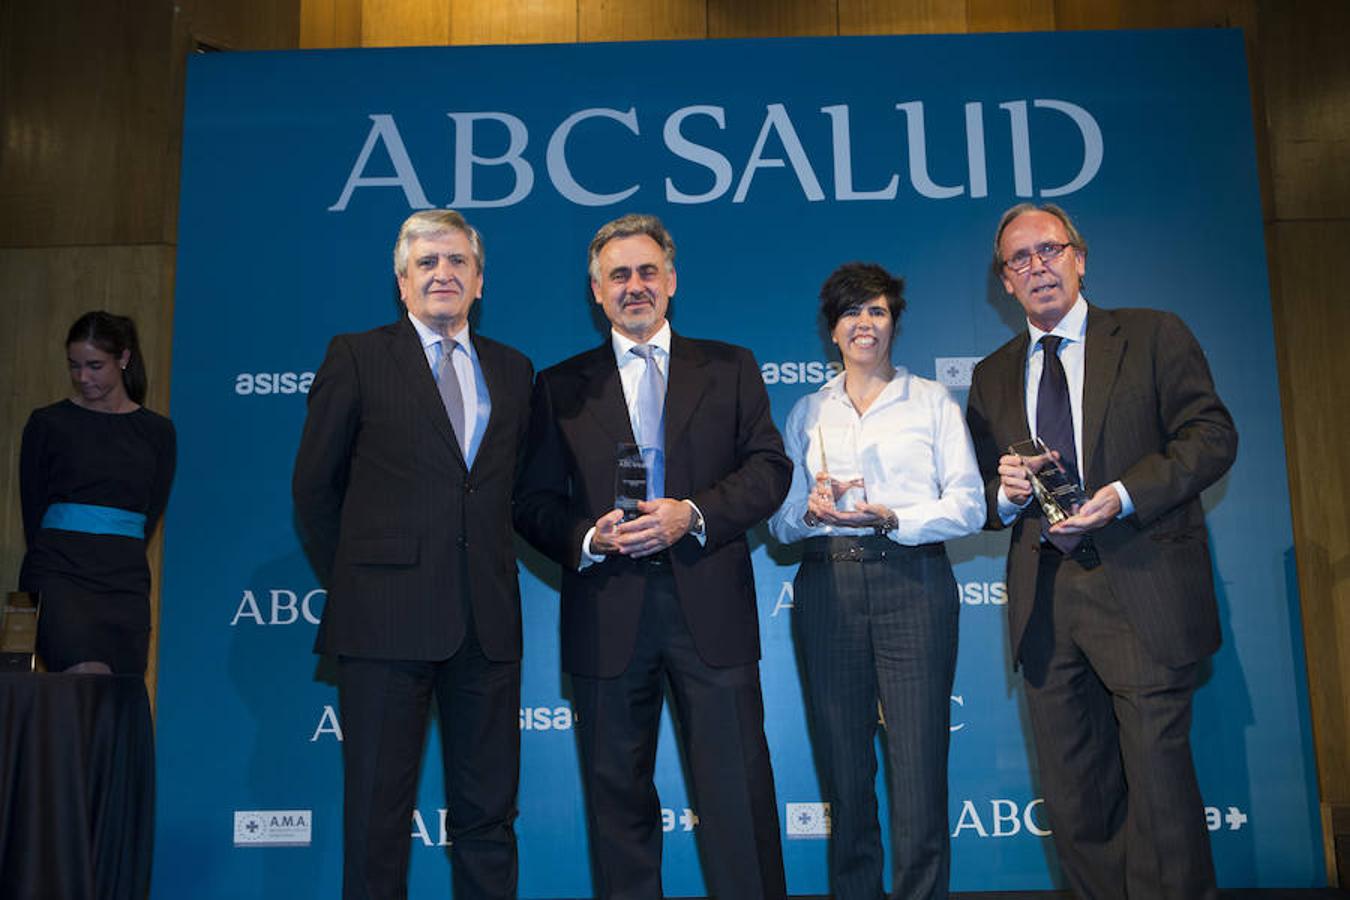 Los premios ABC Salud reconocen en sus seis categorías la labor más destacada de profesionales, instituciones y compañías del mundo sanitario